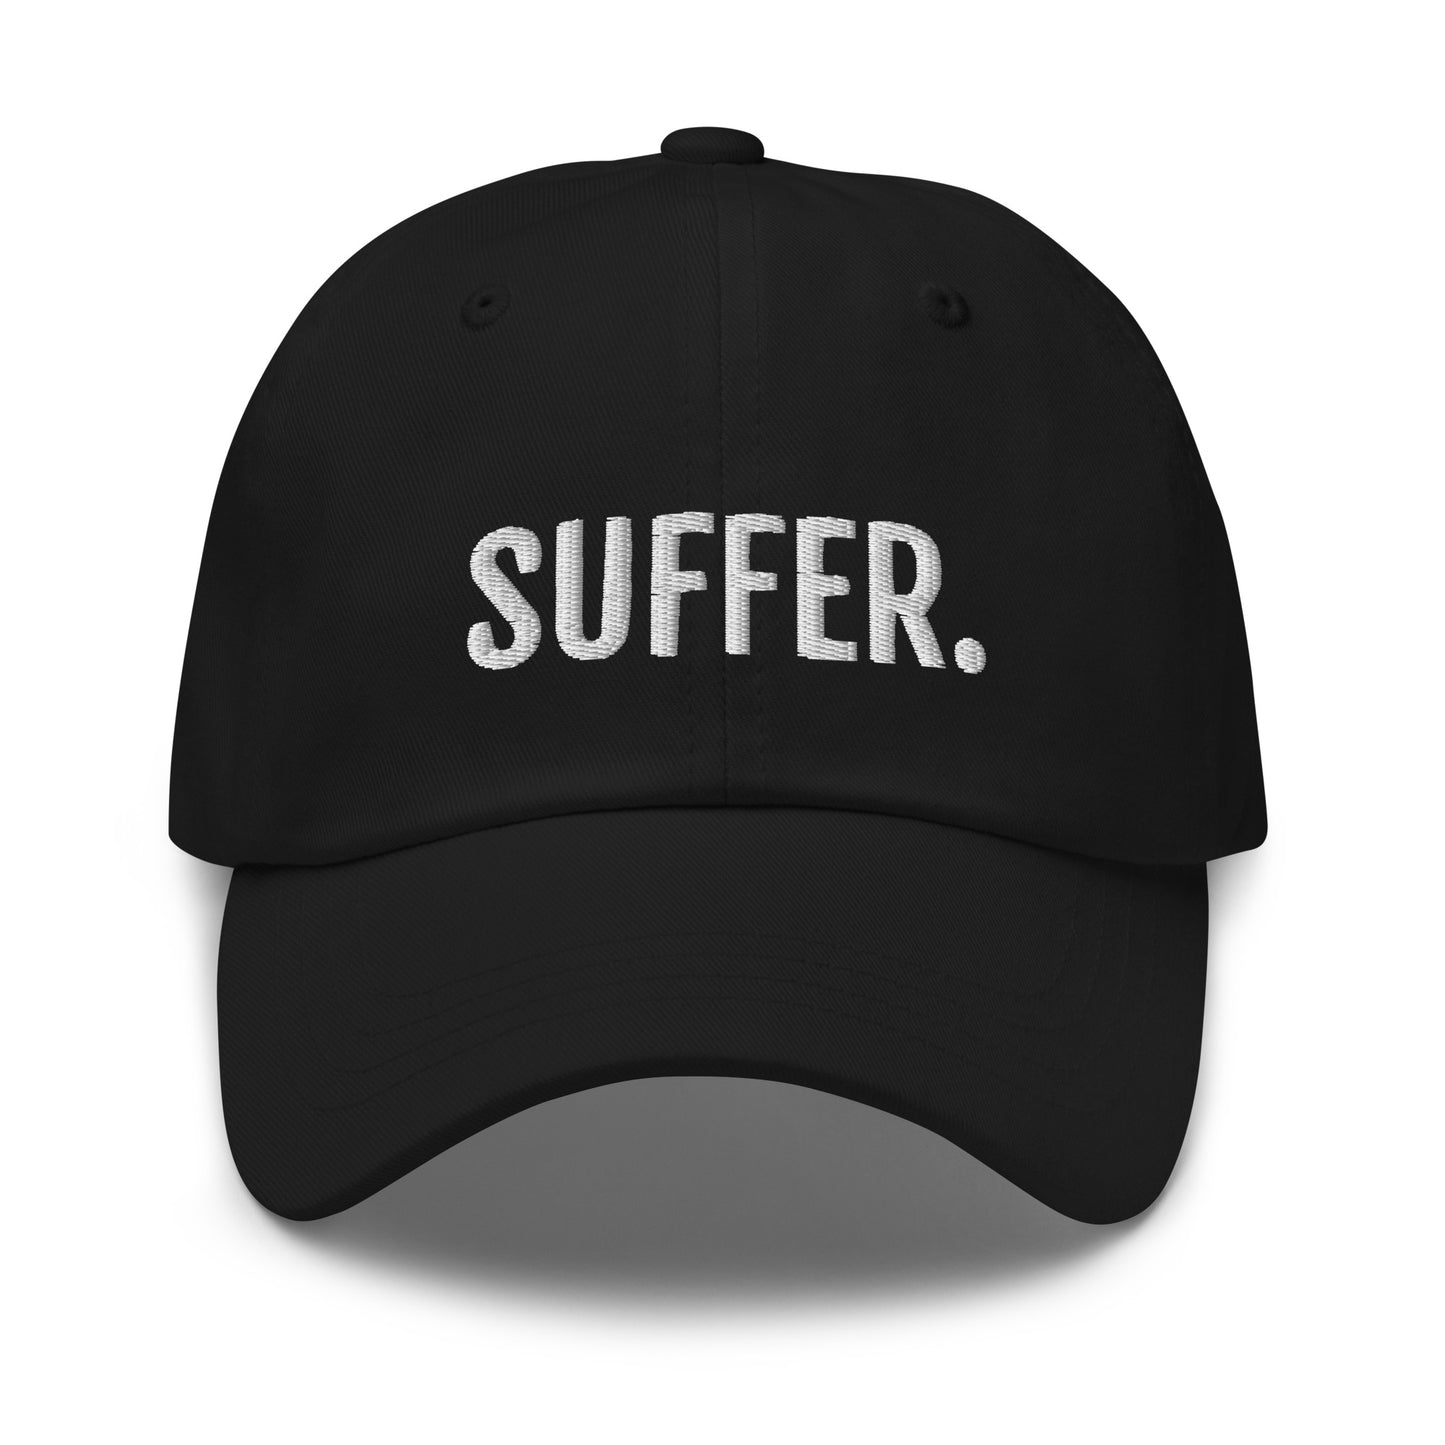 SUFFER. Dad hat